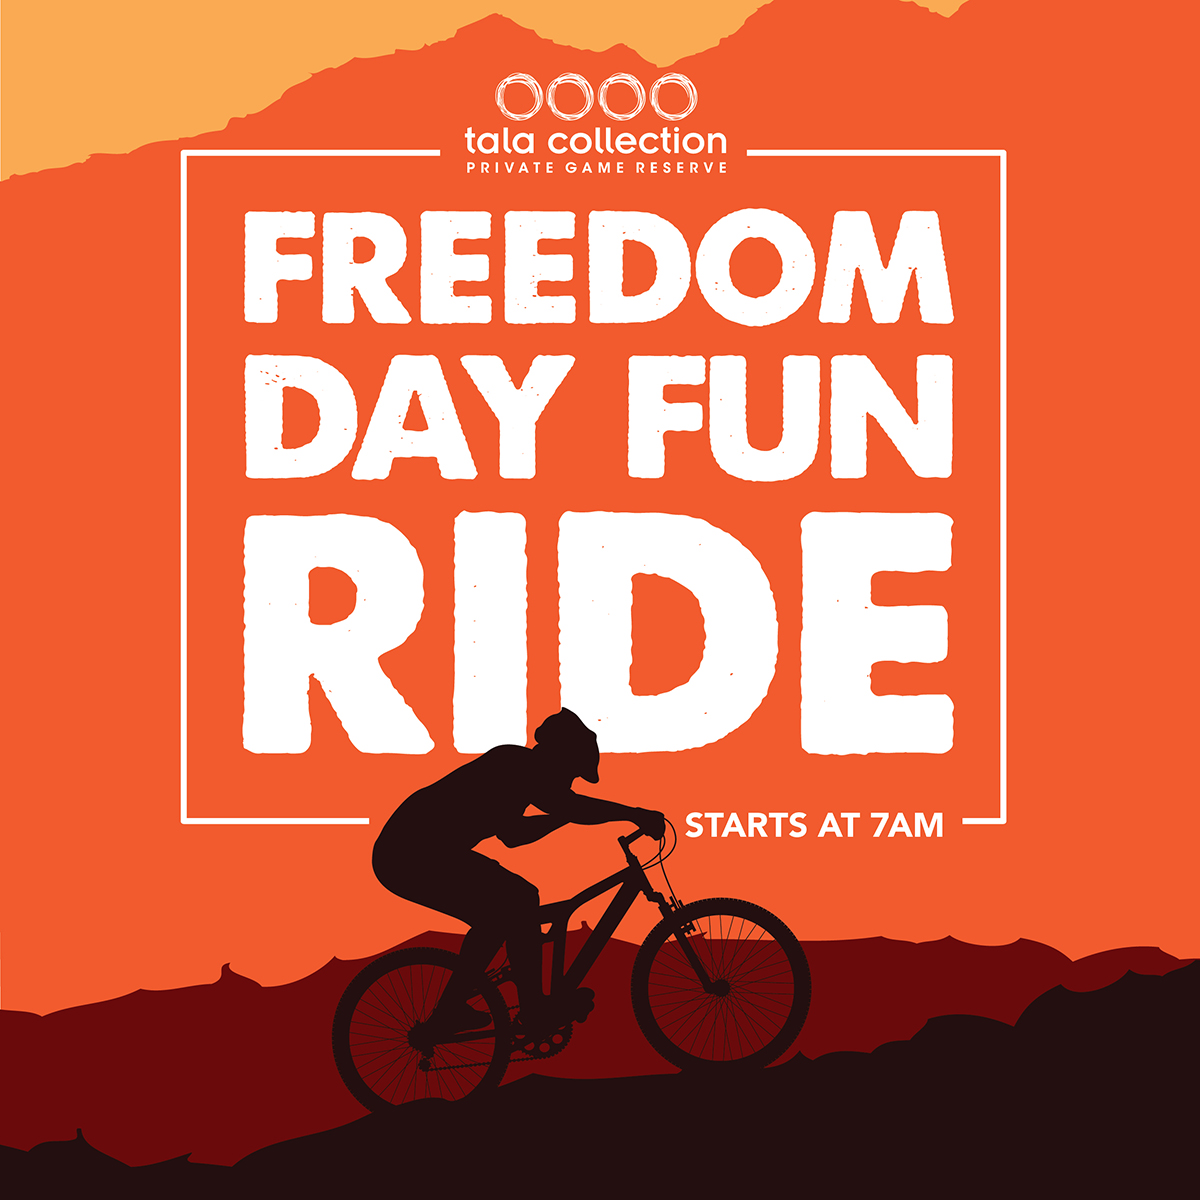 freedom day fun ride